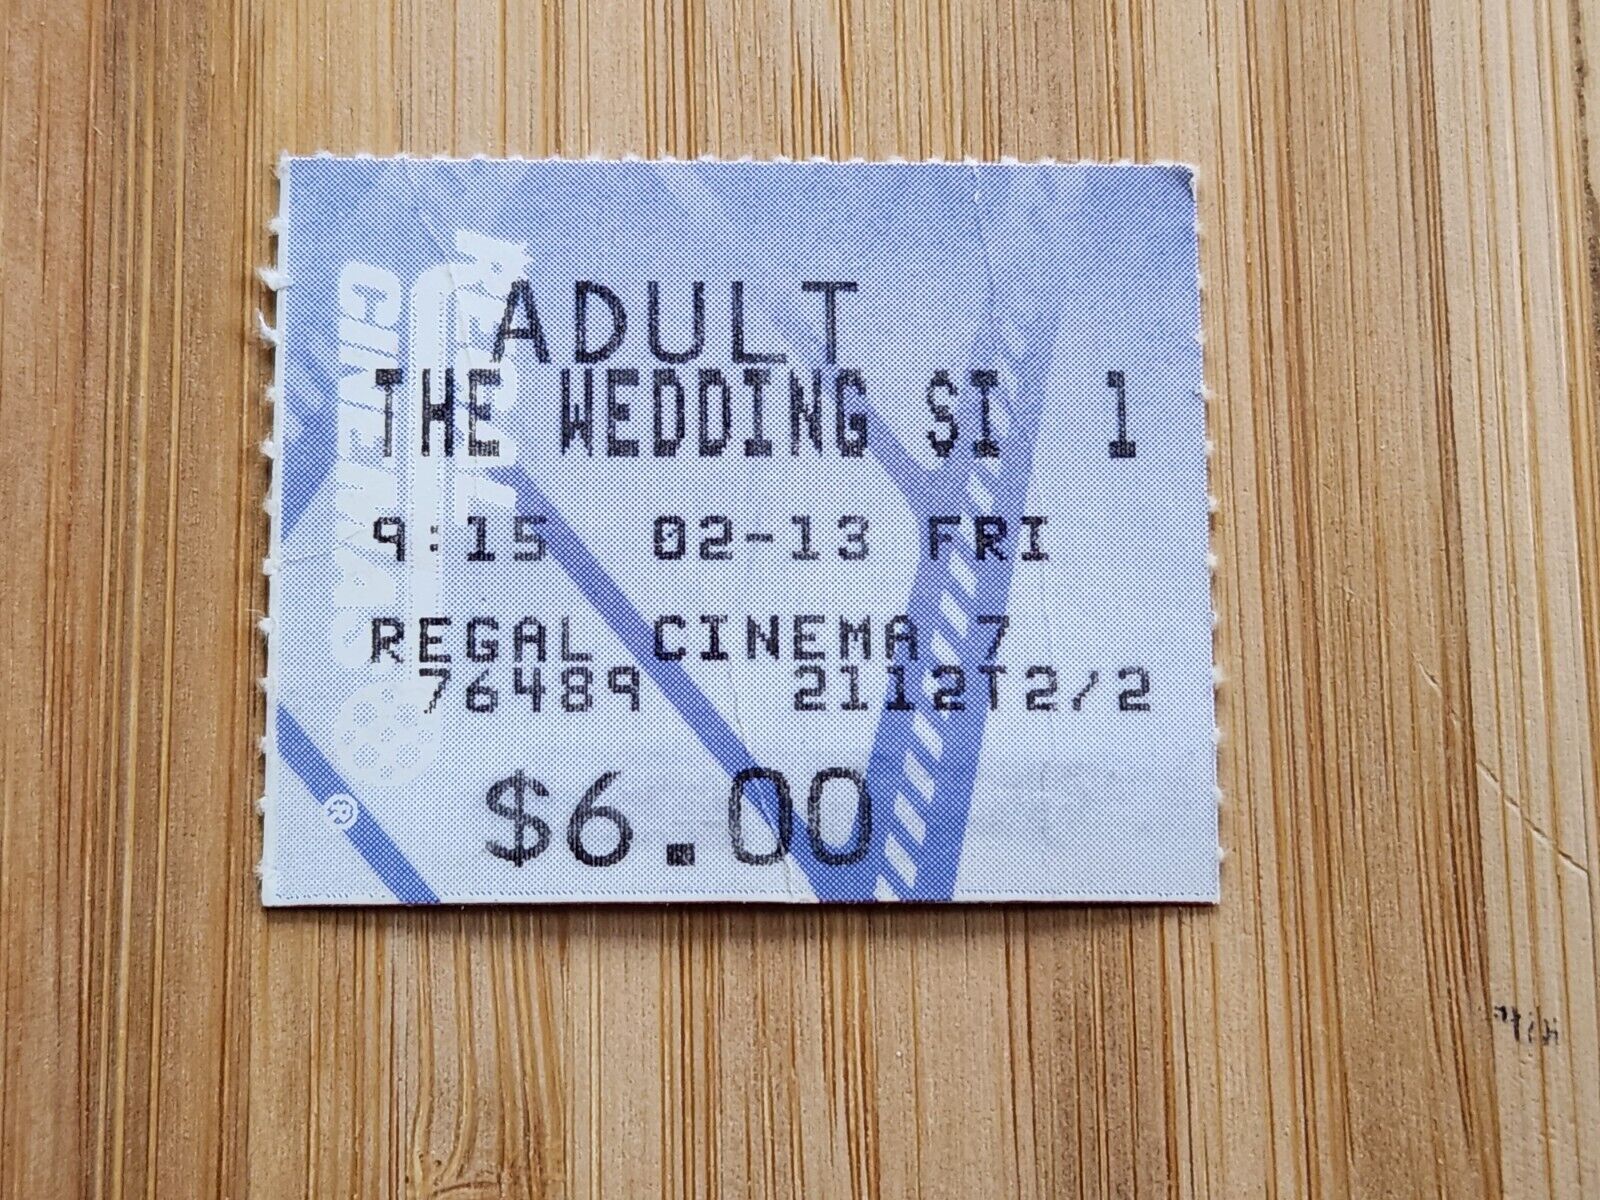 THE WEDDING SINGER Ticket Stub The Wedding Singer Movie Ticket Stub Adam Sandler